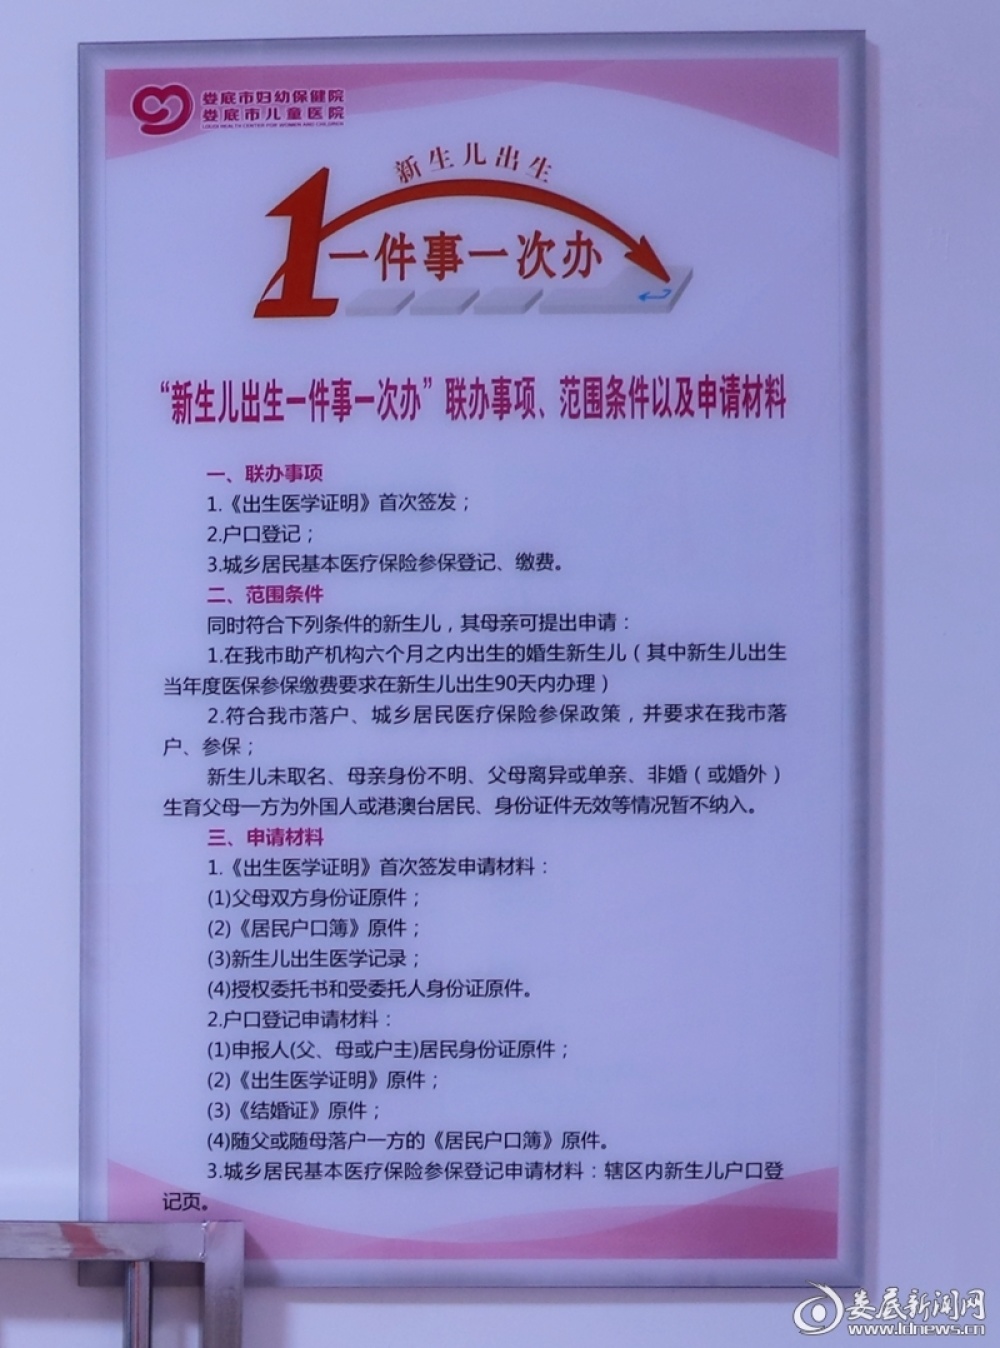 关于北京市海淀妇幼保健院专家跑腿代预约，在线客服为您解答的信息